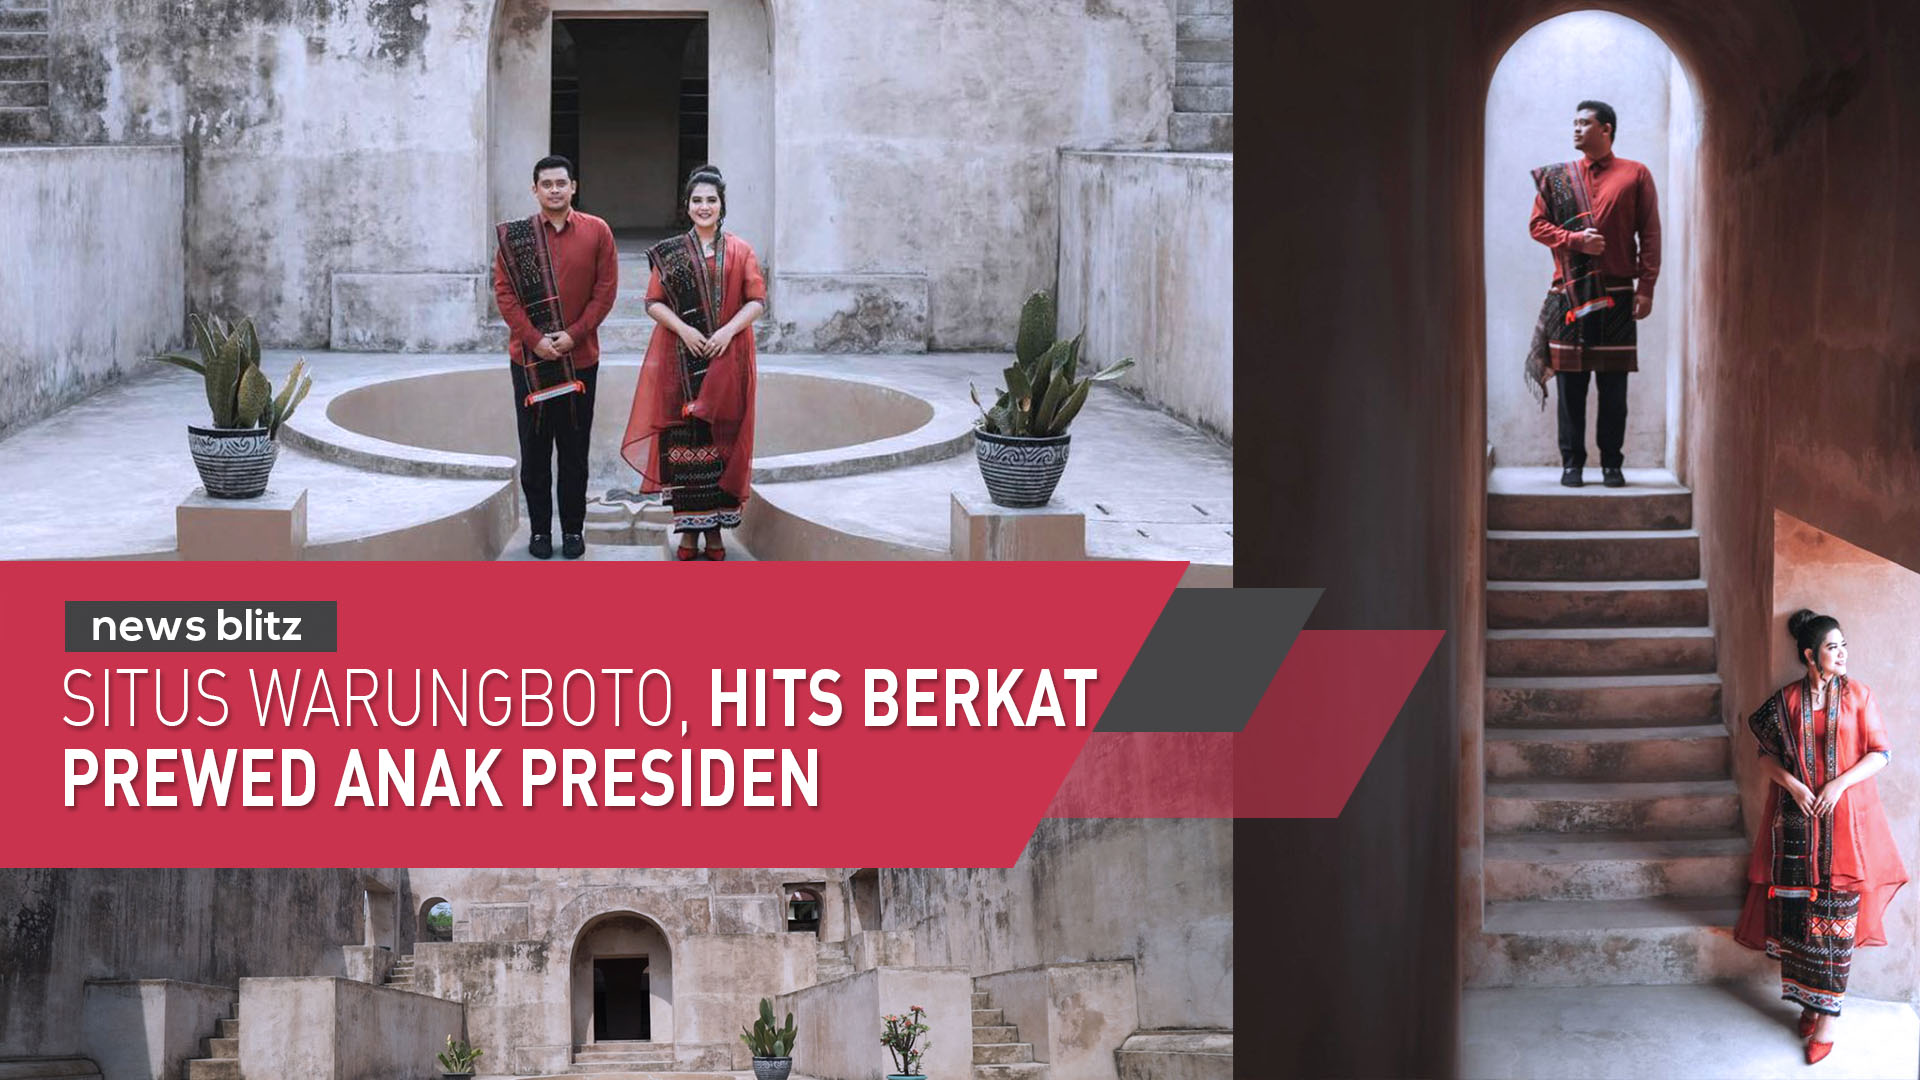 Situs Warungboto, hits berkat prewed anak Presiden